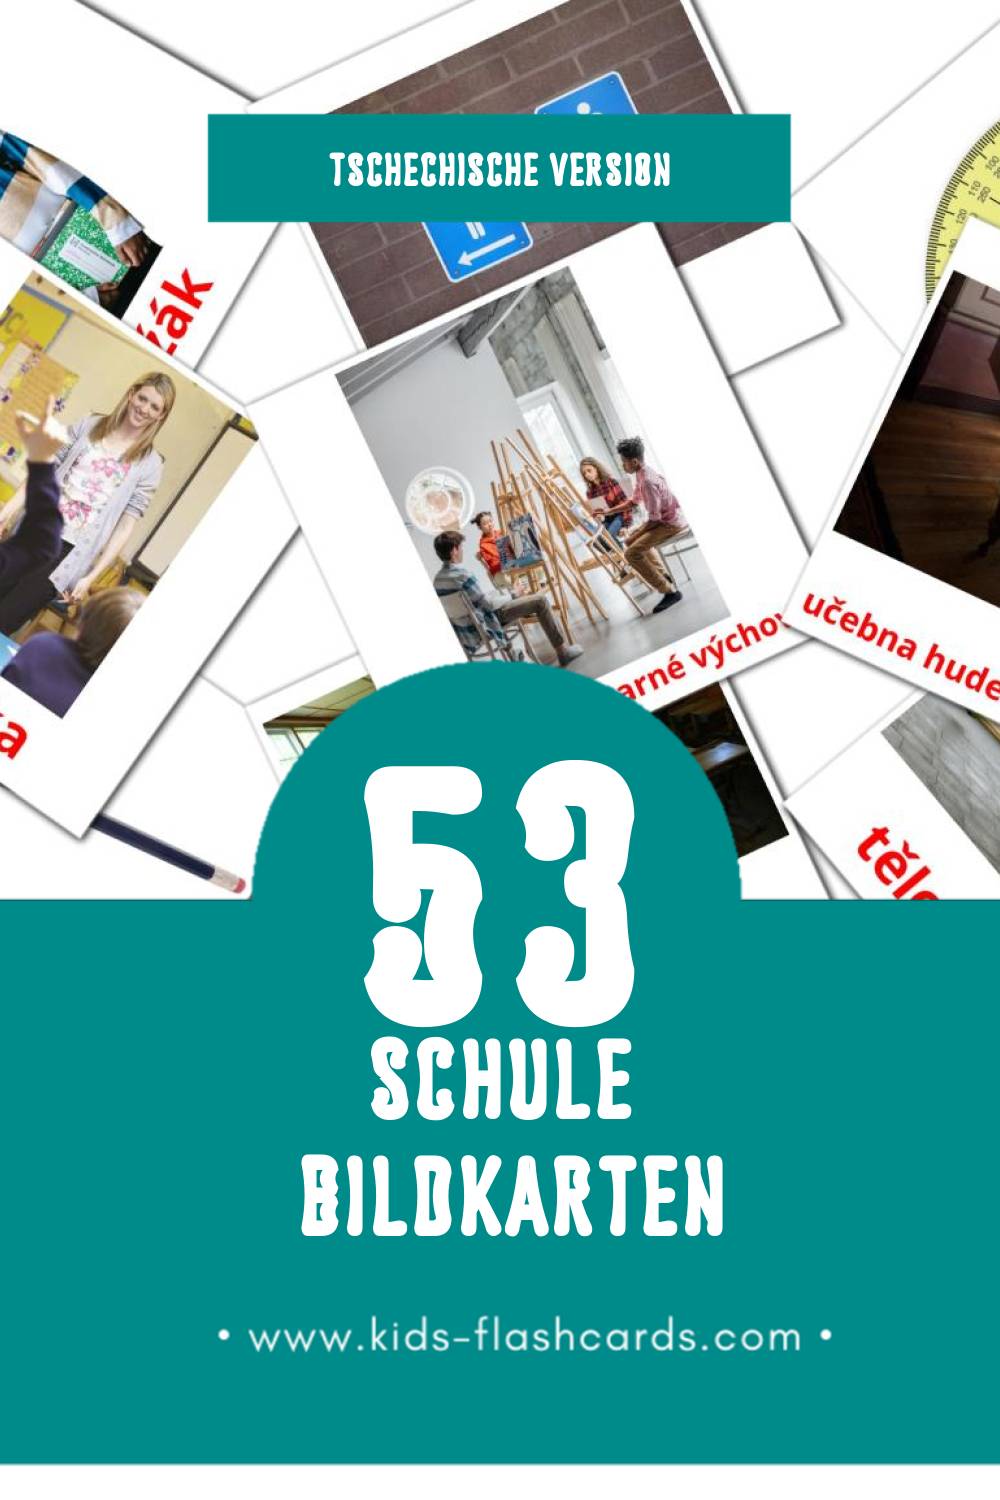 Visual Škola Flashcards für Kleinkinder (53 Karten in Tschechisch)